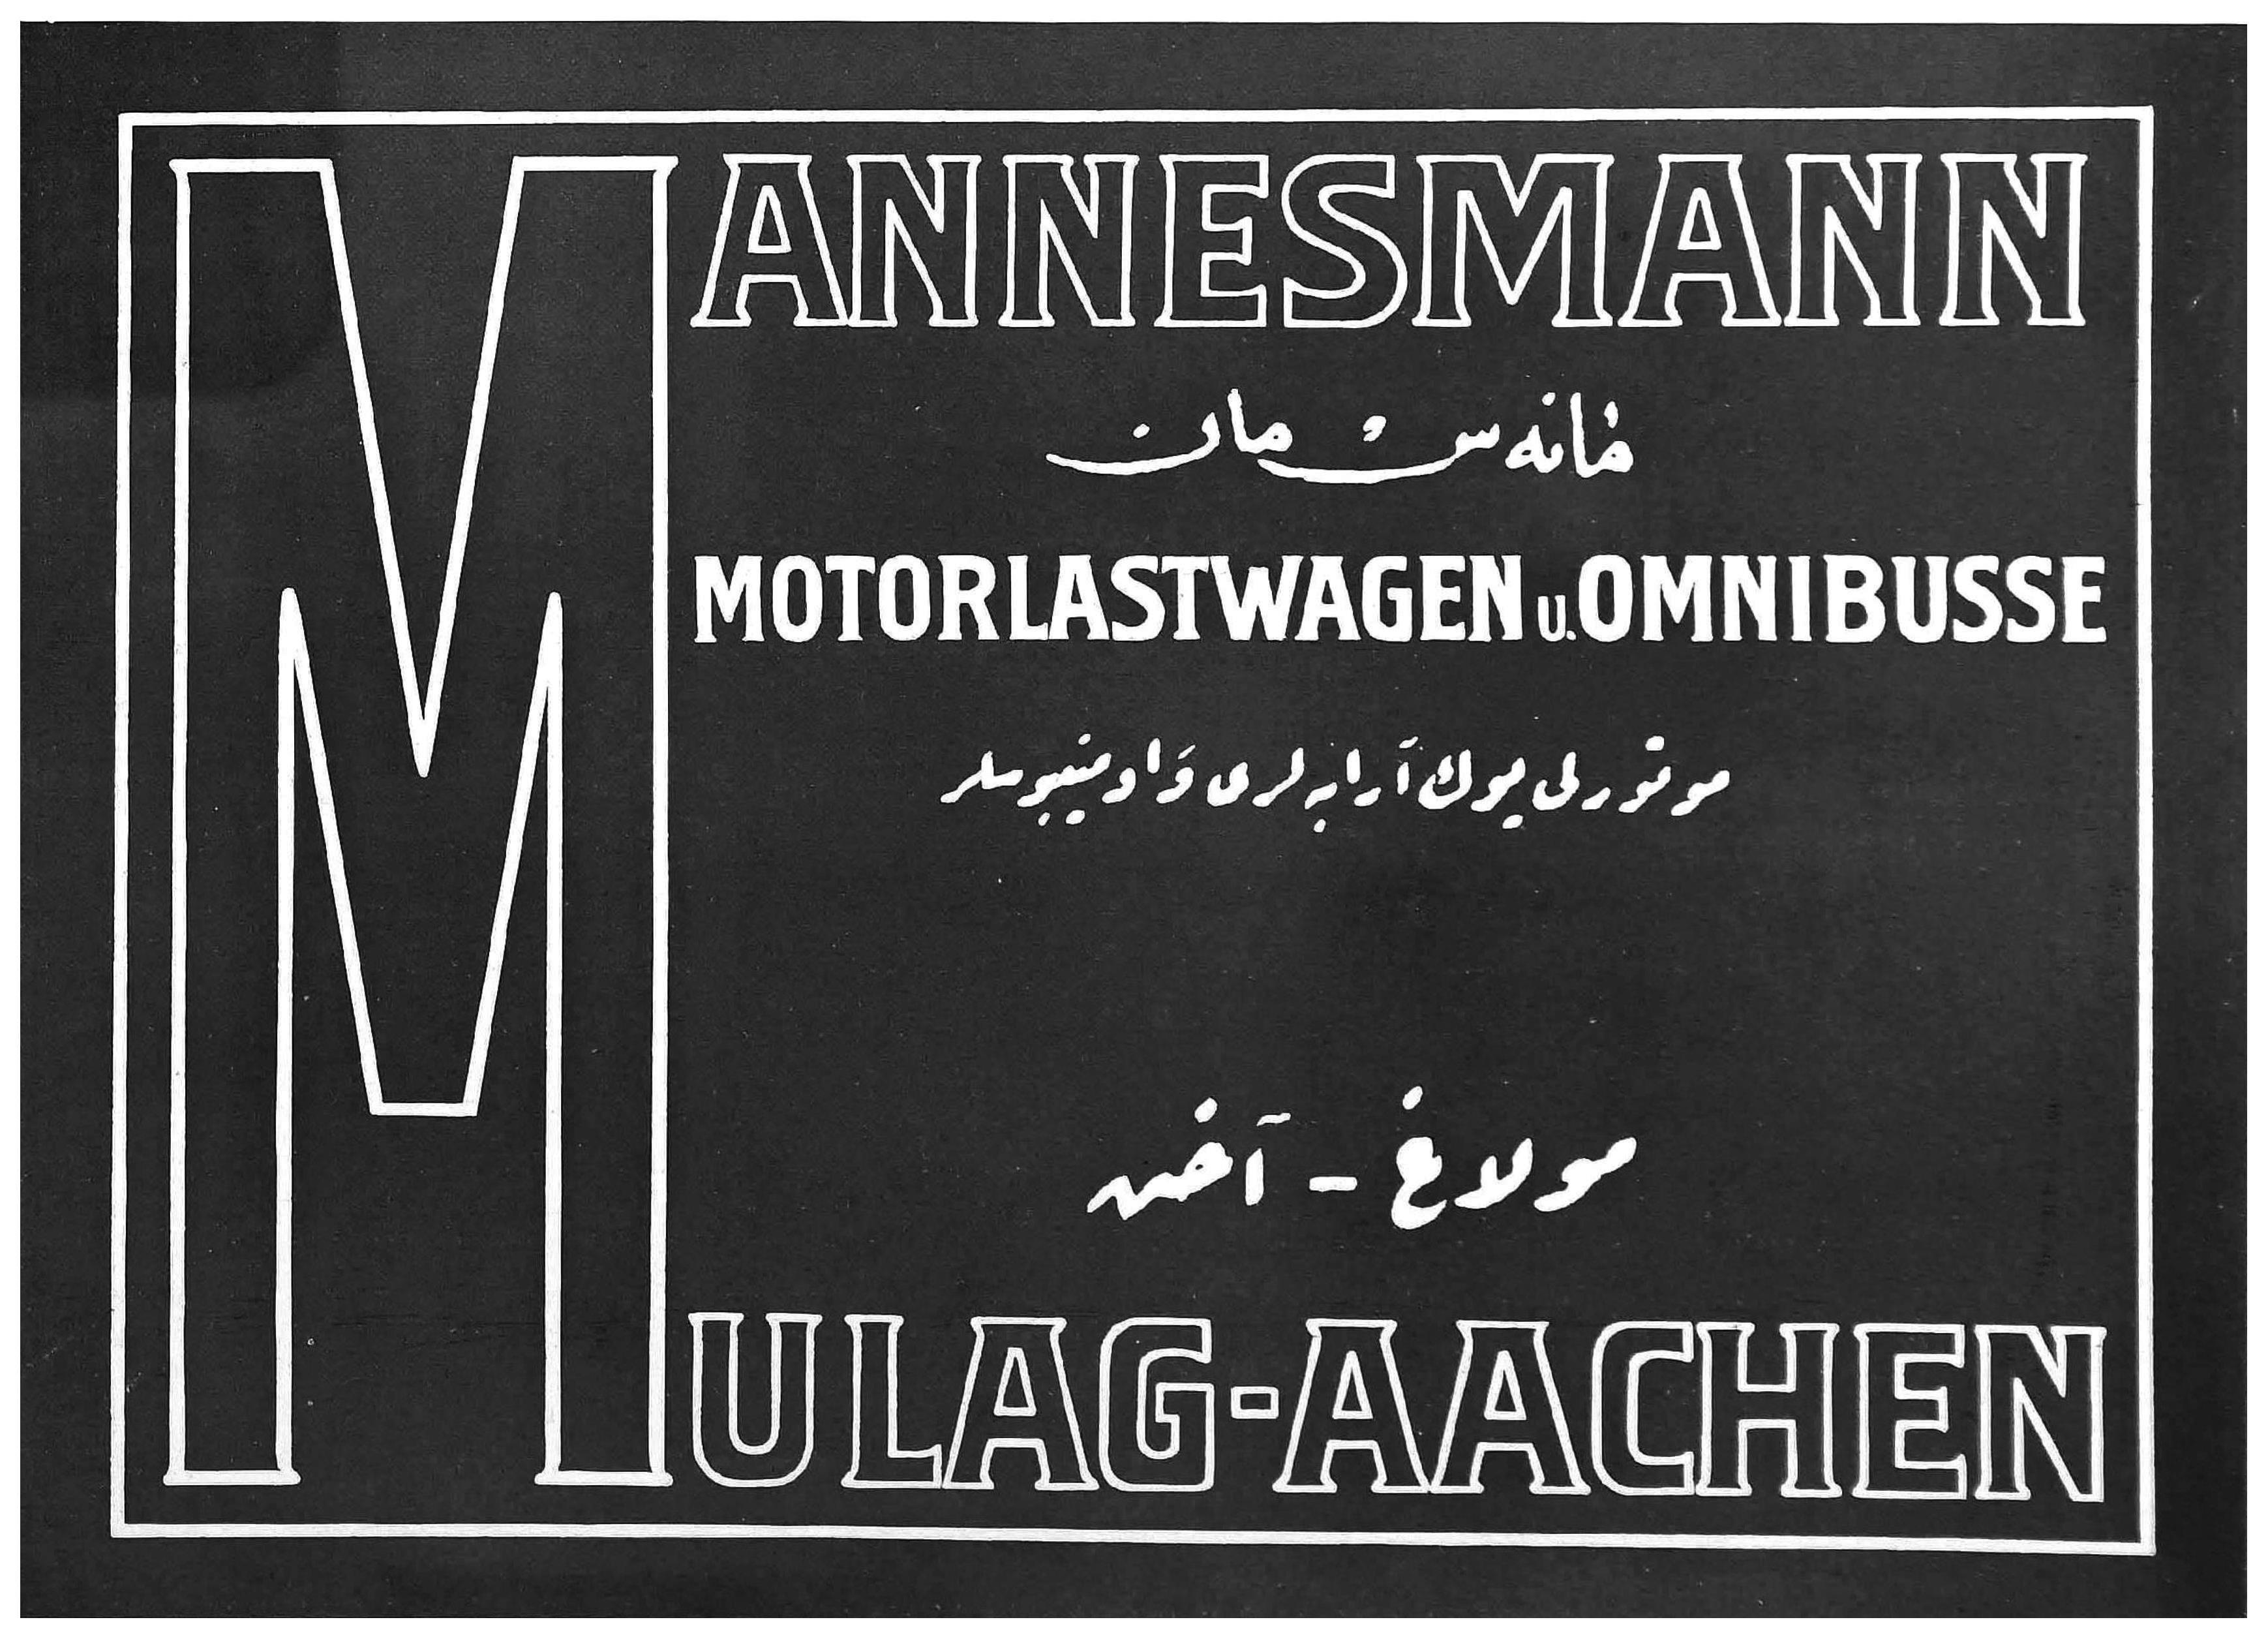 Mannesmann 1916 1.jpg